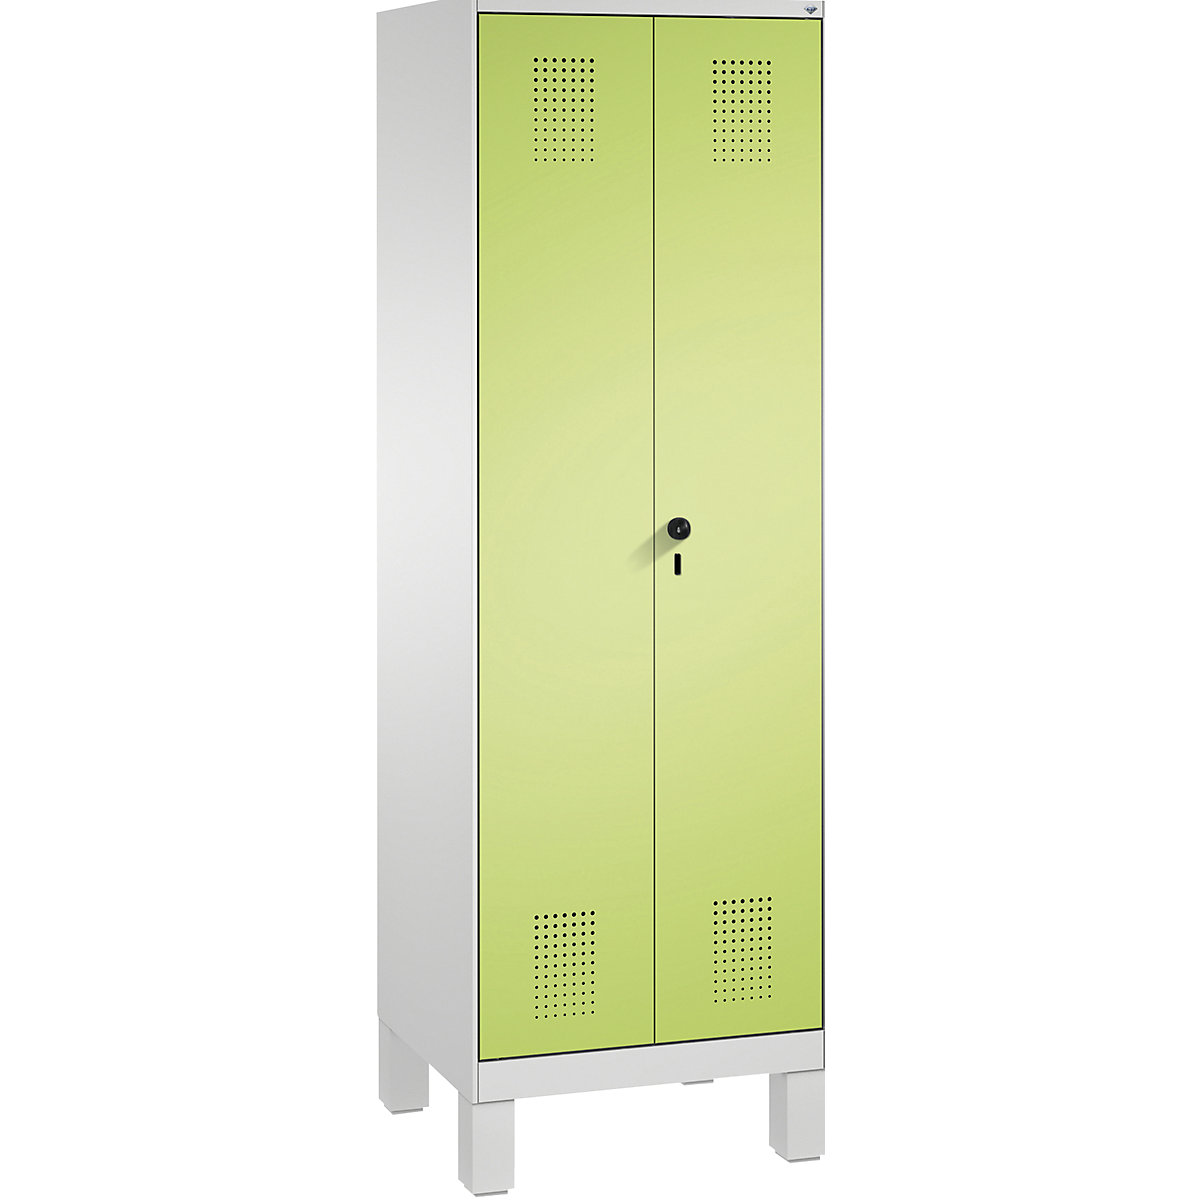 EVOLO takarítószer-/készüléktároló szekrény – C+P, rövidített válaszfal, 6 akasztó, rekeszek 2 x 300 mm, lábakkal, világosszürke / viridinzöld-9